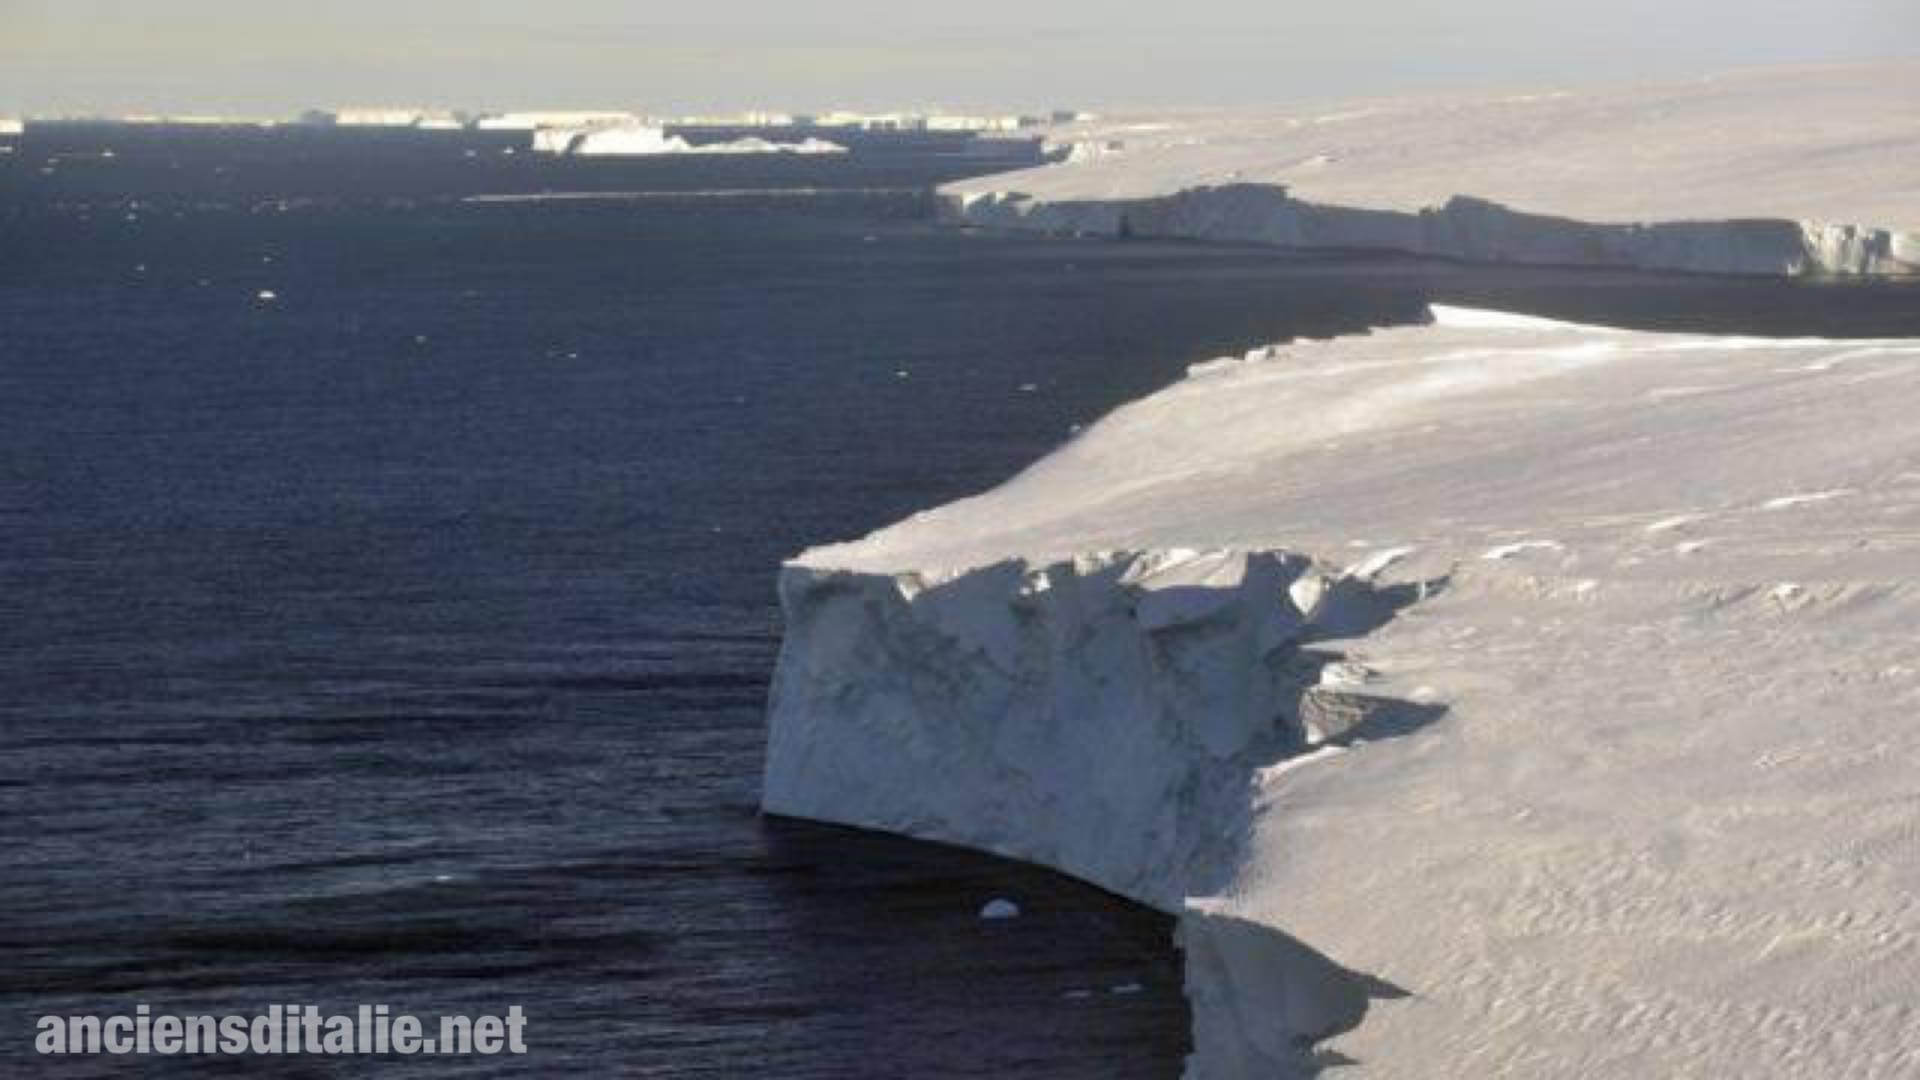 จะเกิดอะไรขึ้นถ้าน้ำแข็ง แอนตาร์กติกา ละลายหมด?